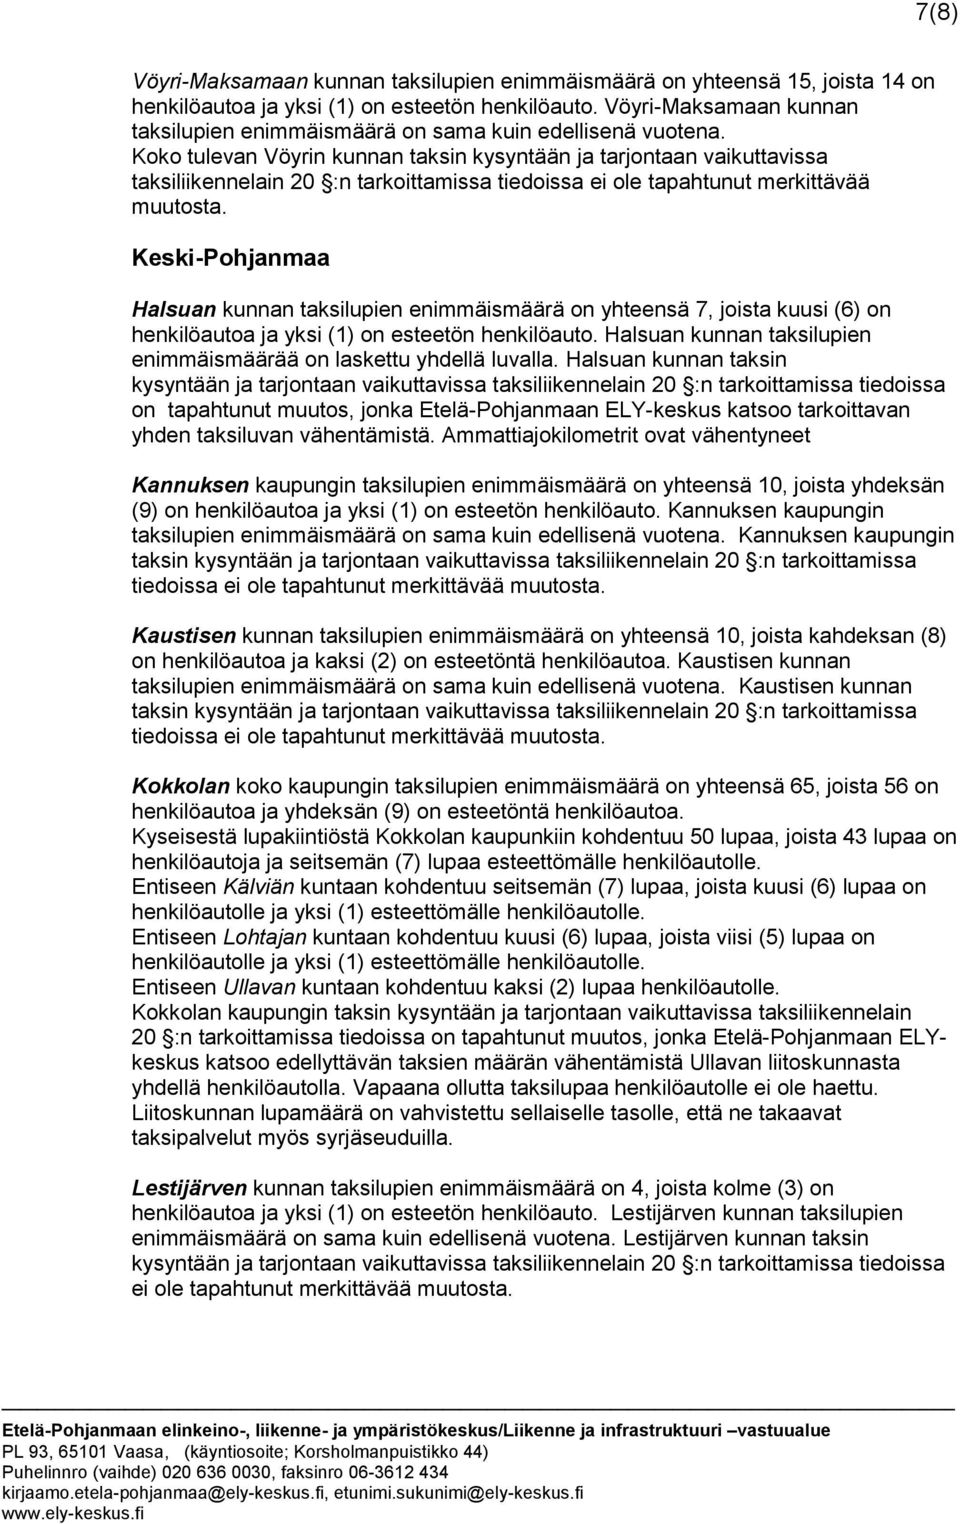 Koko tulevan Vöyrin kunnan taksin kysyntään ja tarjontaan vaikuttavissa taksiliikennelain 20 :n tarkoittamissa tiedoissa ei ole tapahtunut merkittävää muutosta.